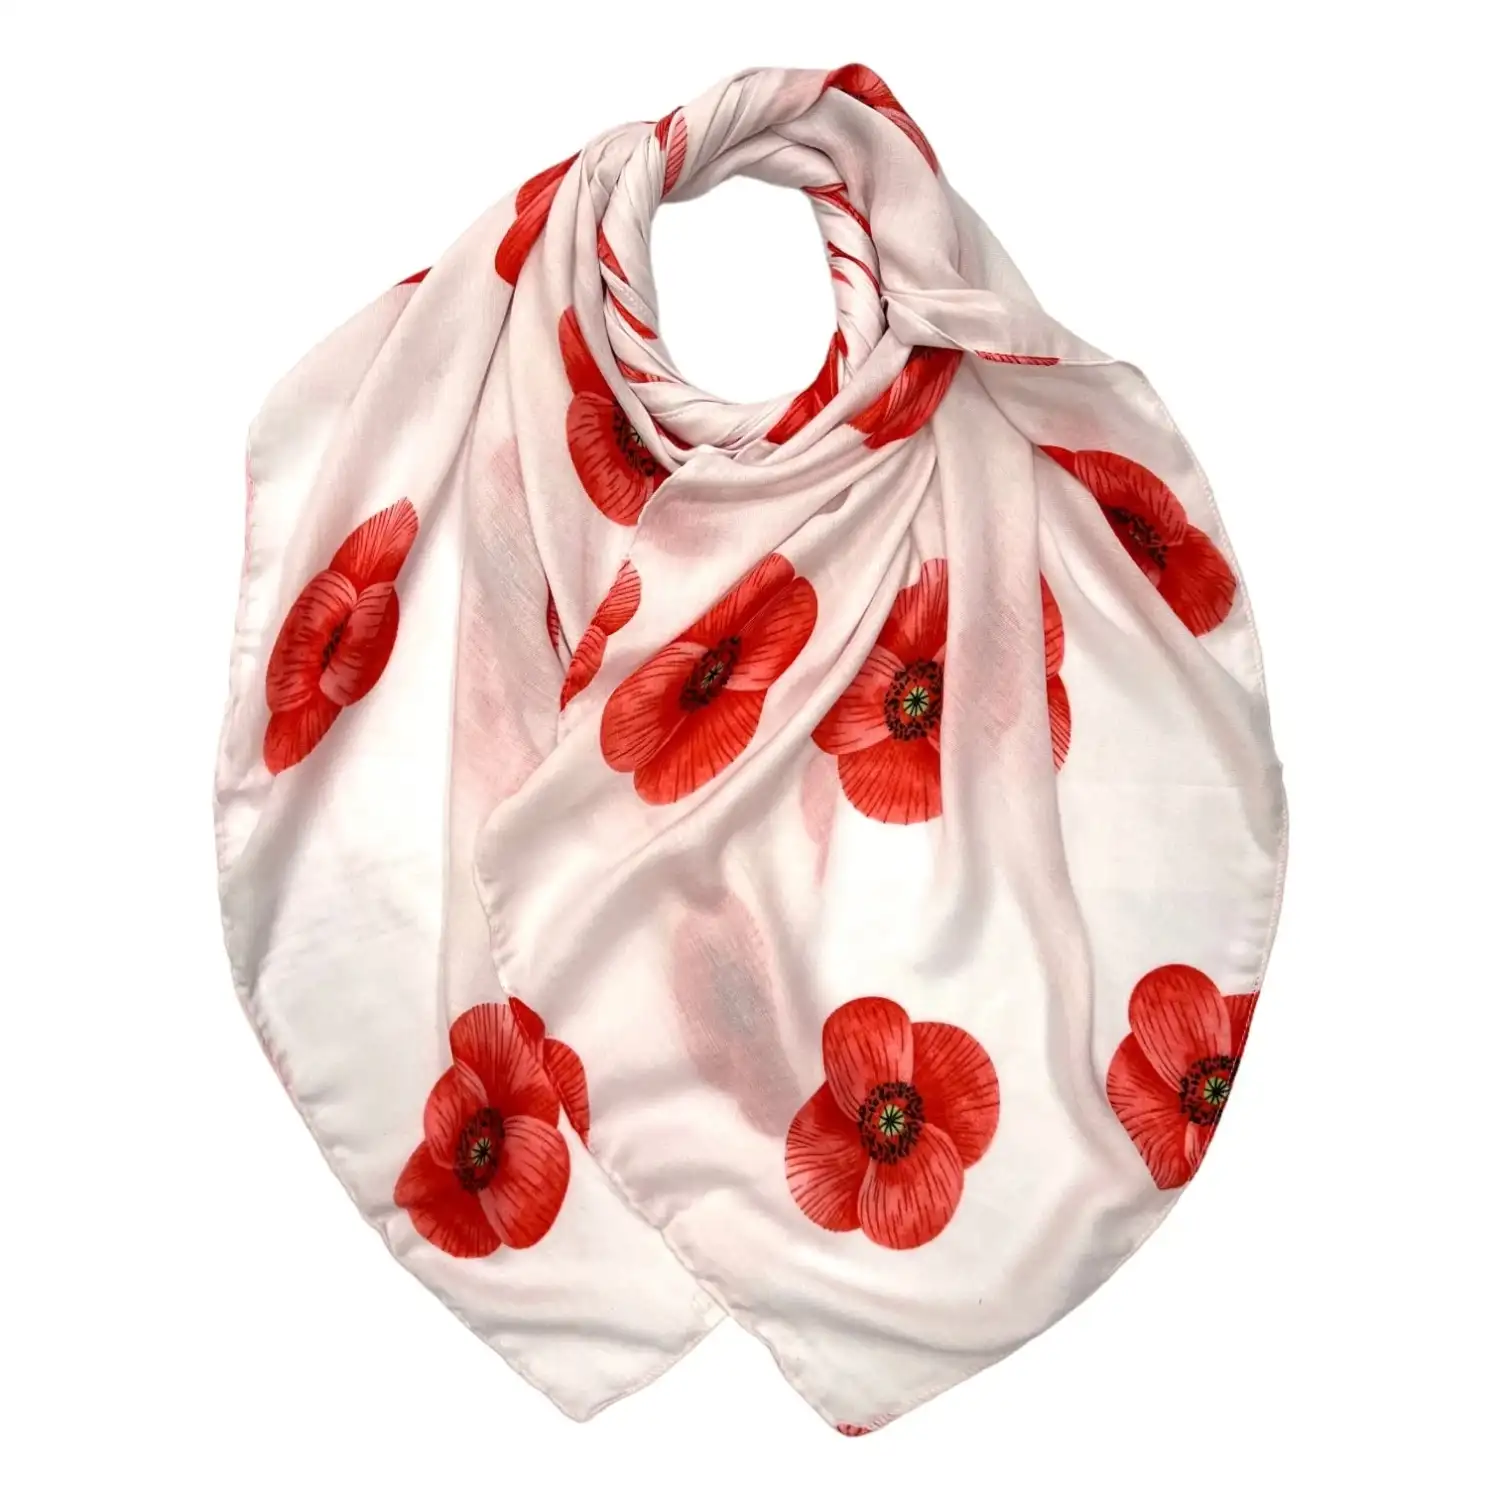 Hvid tørklæde med store røde blomster